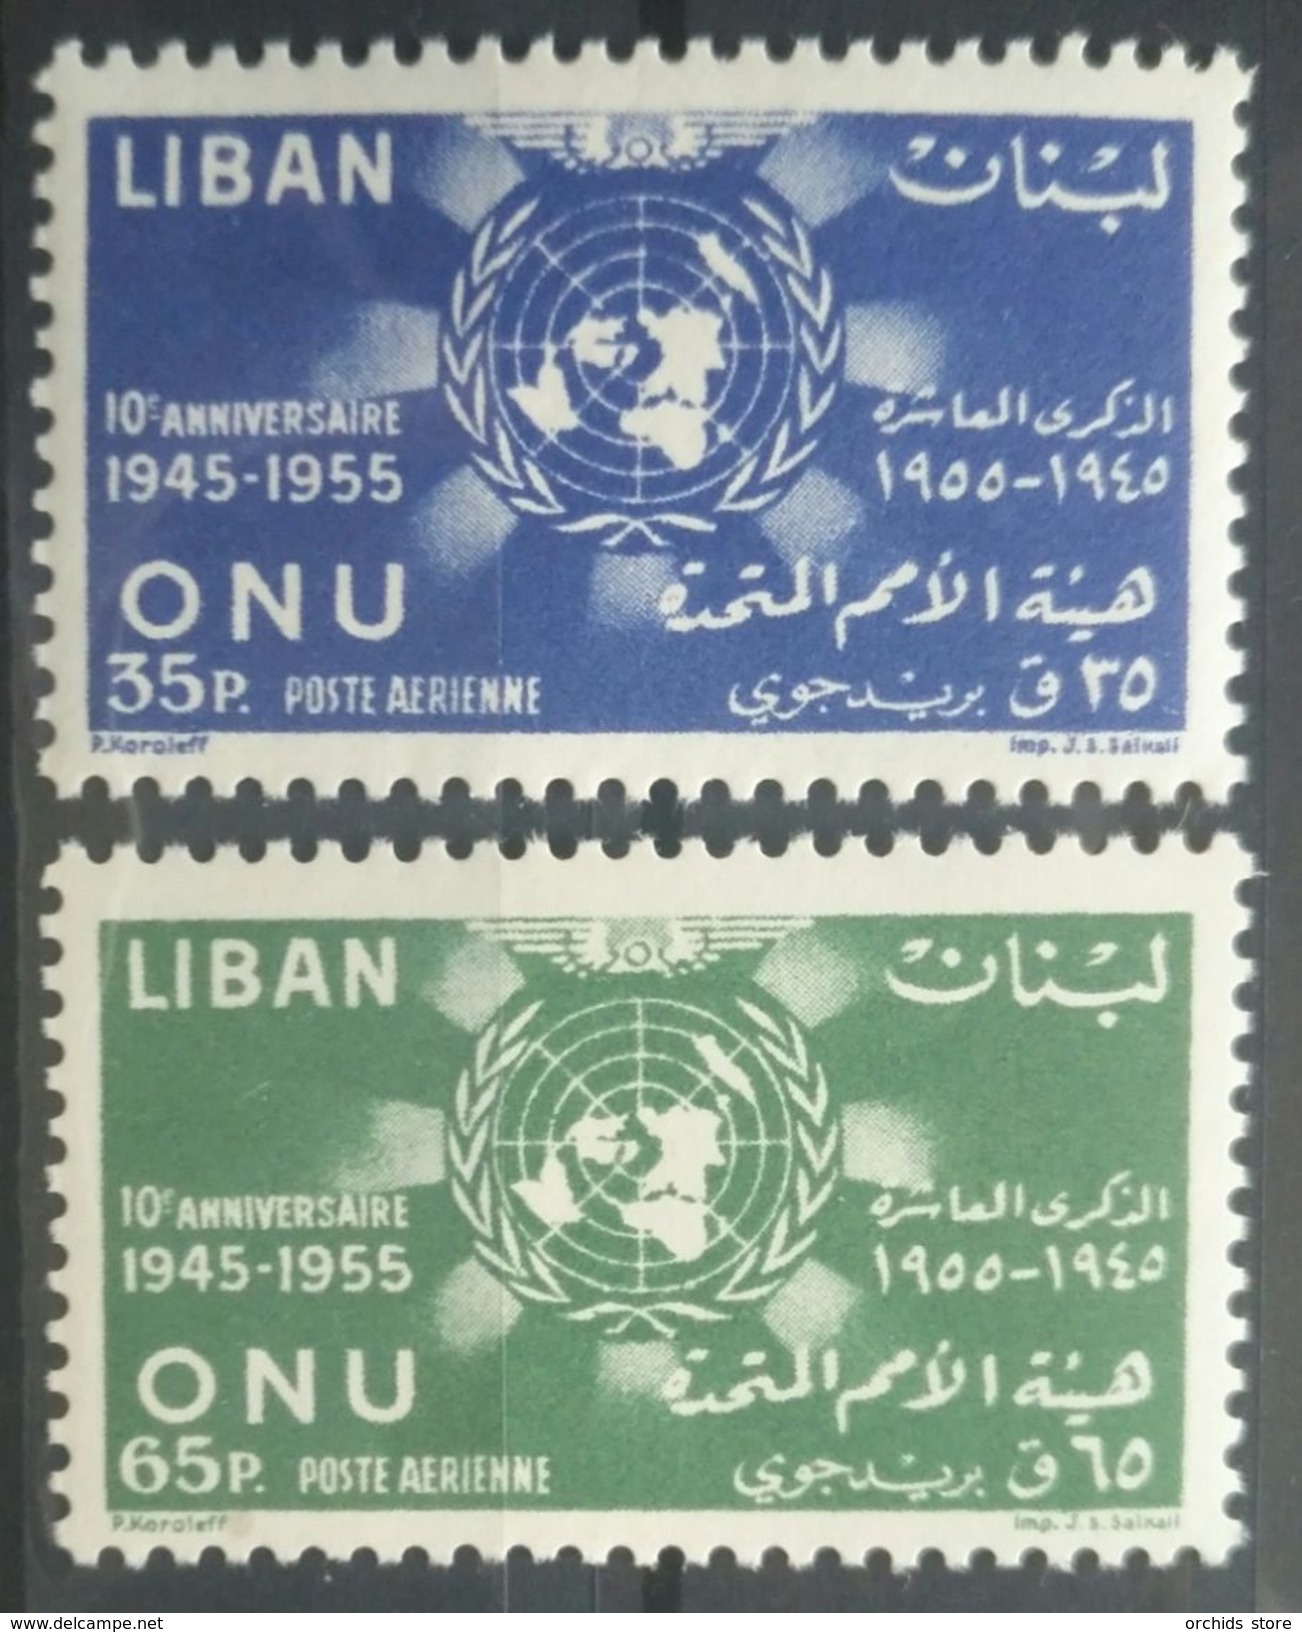 E11RM Lebanon 1956 Mi. 569A-570A Complete Set 2v. - United Nations UNO ONU 10th Anniv 1945-1955 - MNH - Lebanon